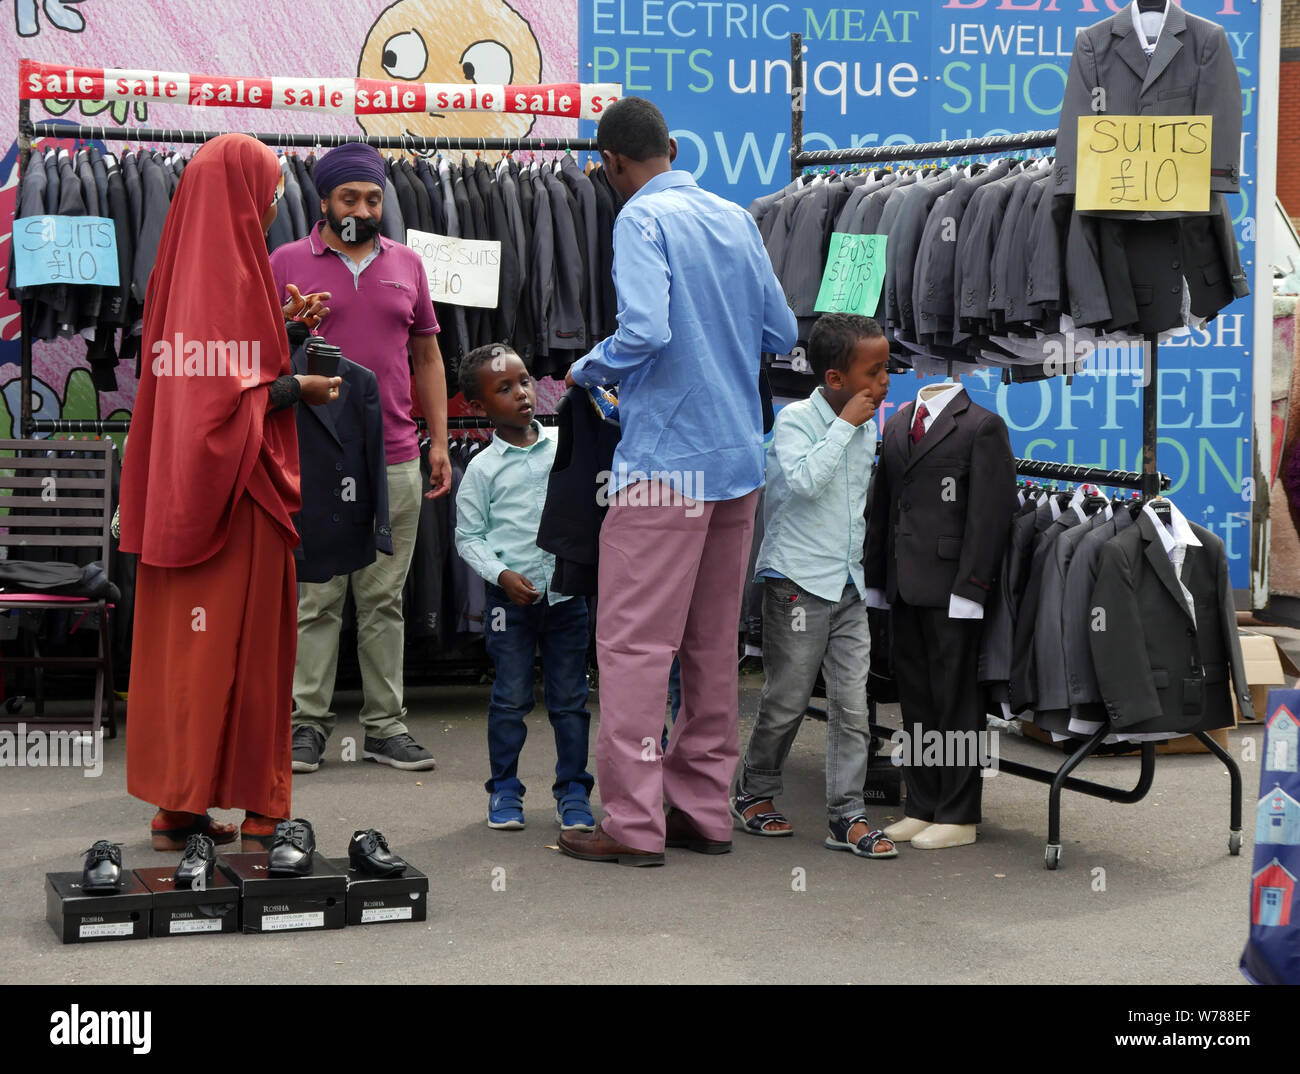 Familie Einkauf für die Jungen Anzüge auf einem Markt im Freien in England Großbritannien, ein Junge versucht, auf eine Jacke, während die Eltern einen Preis verhandeln. foto DON TONGE Stockfoto